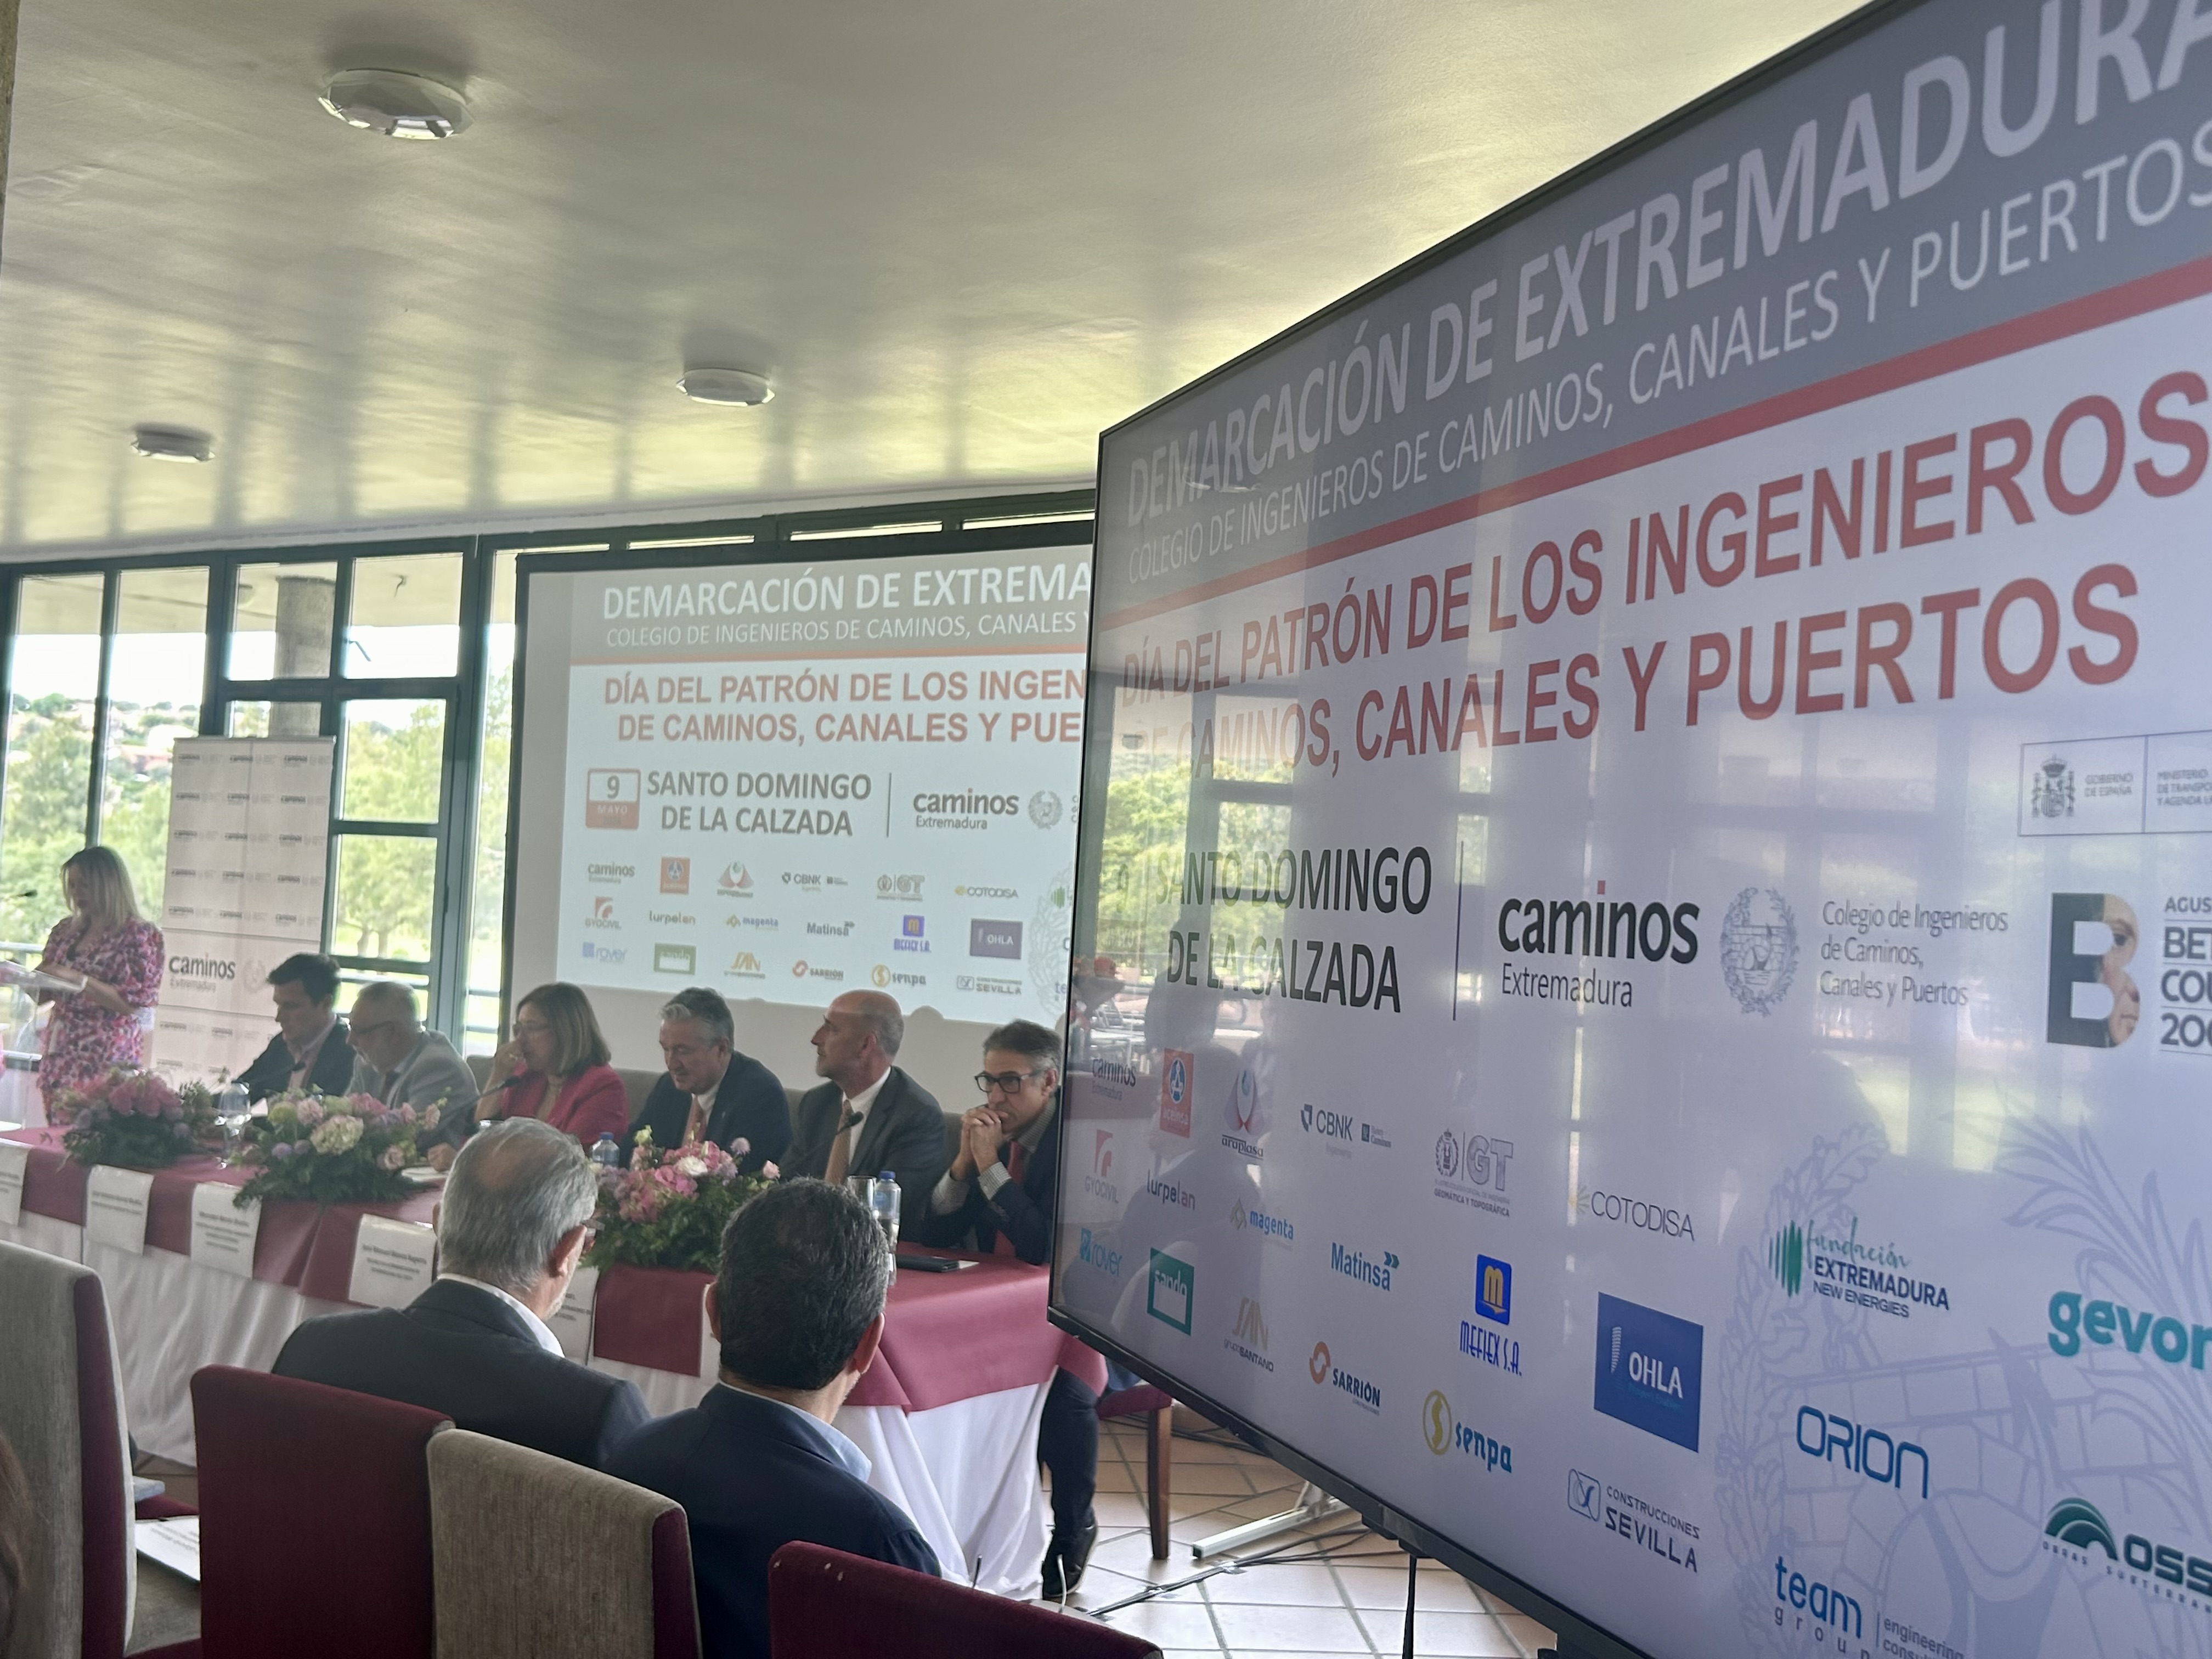 Image 1 of article Mercedes Morán participa en los actos del patrón de los ingenieros de Caminos, Canales y Puertos organizados en Cáceres